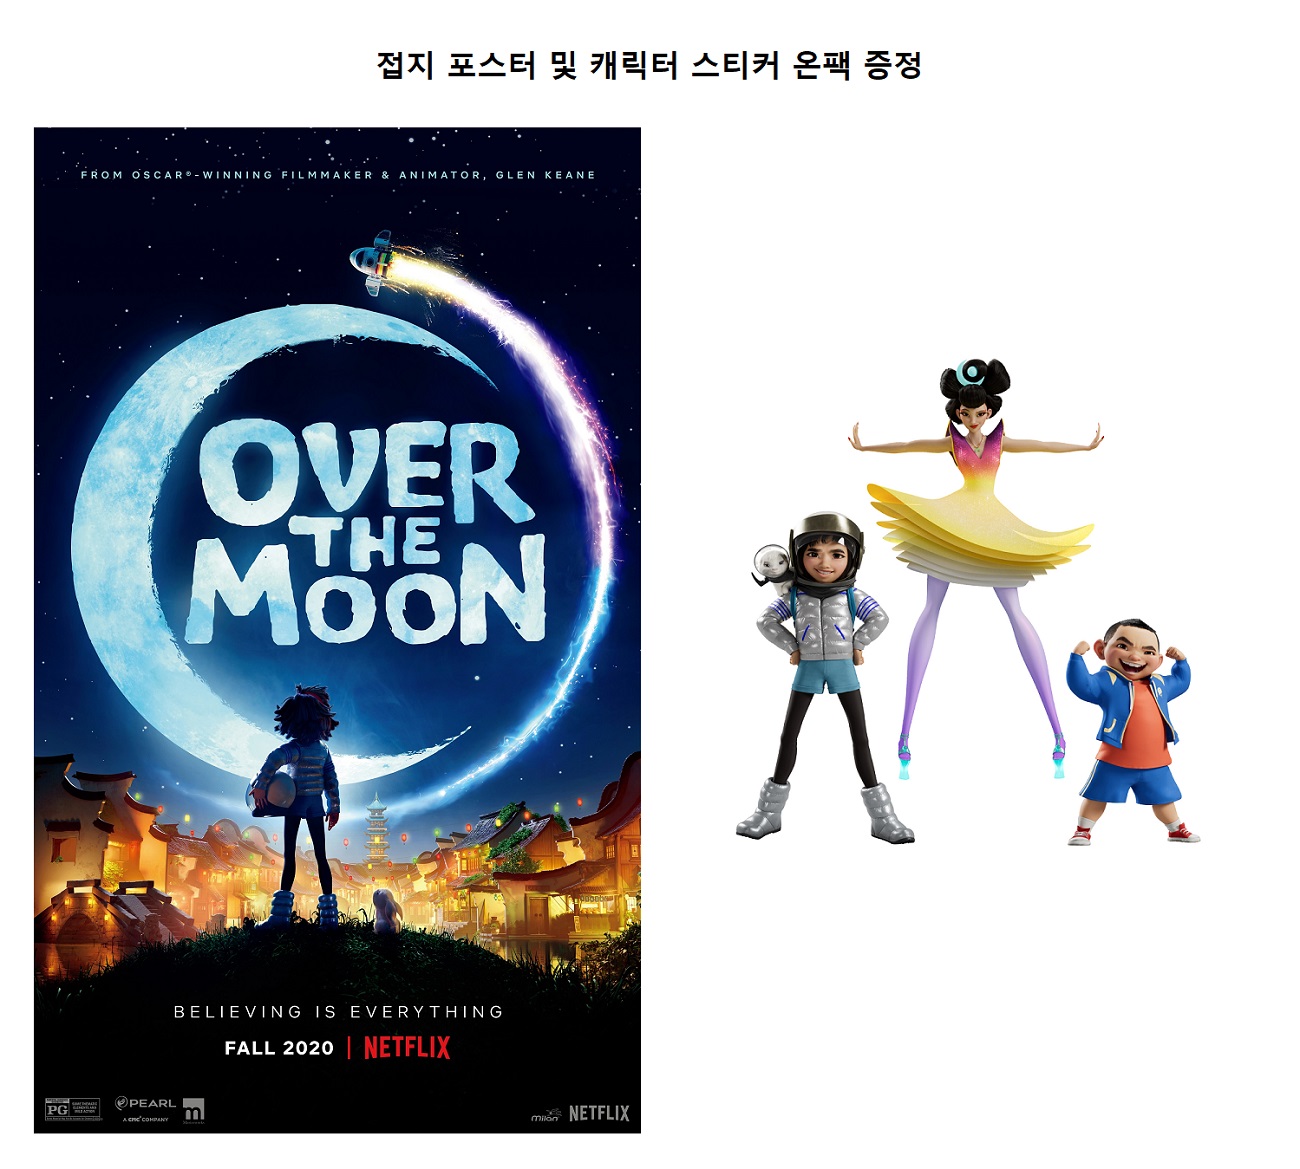 넷플릭스 '오버 더 문' 영화음악 (Over the Moon Music from the Netflix Film)